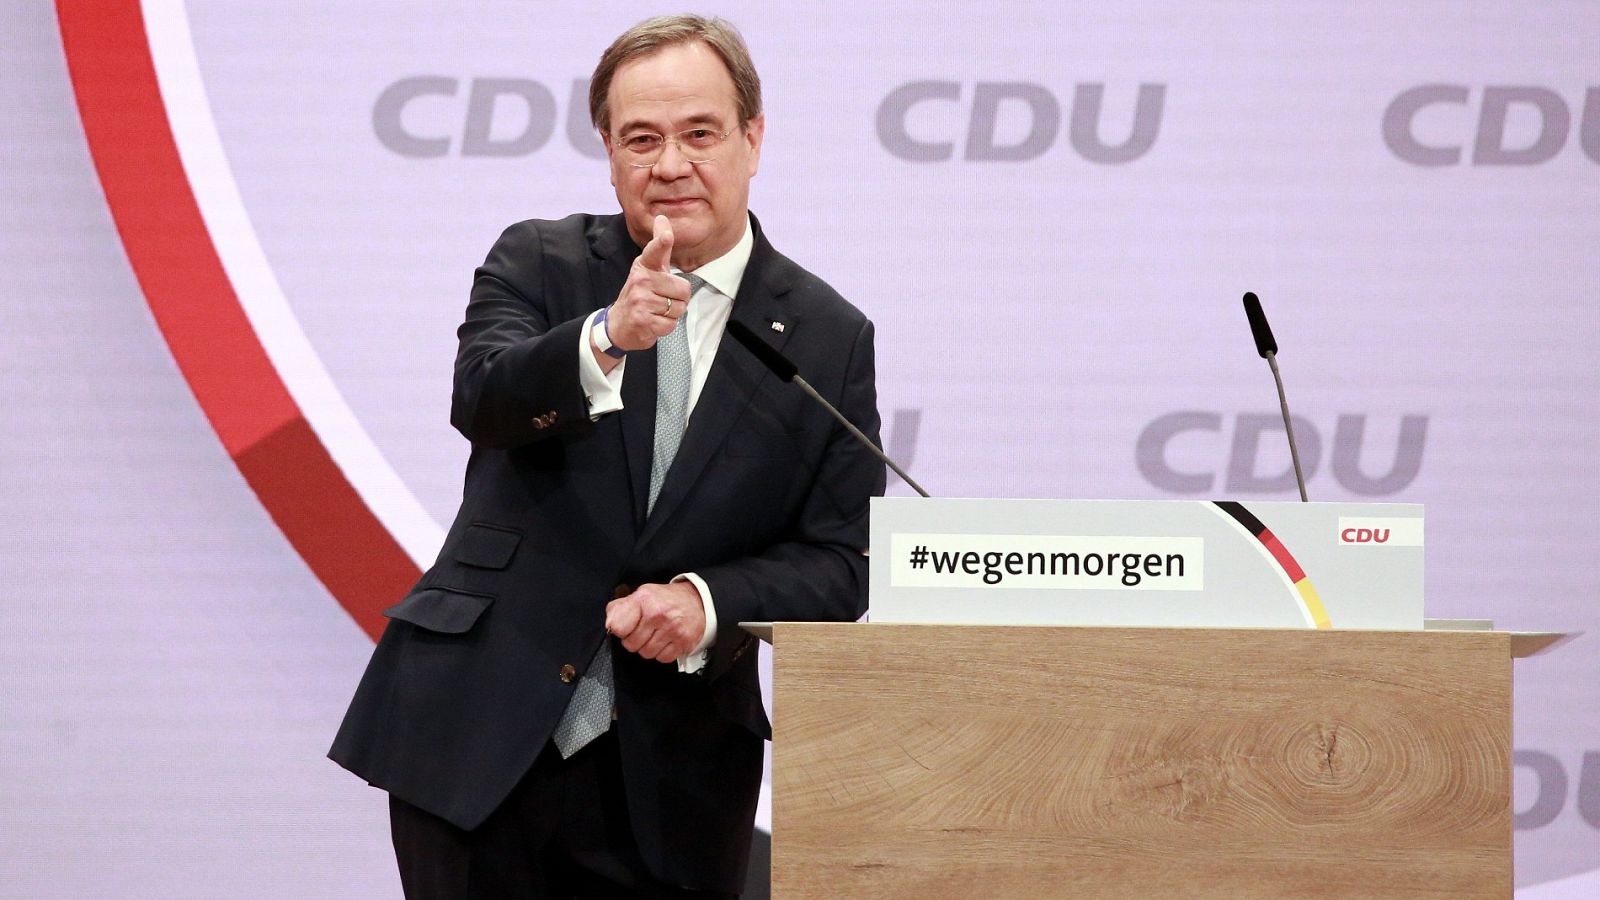 El partido de Angela Merkel, la CDU, apuesta por la continuidad y elige a Armin Laschet como nuevo presidente